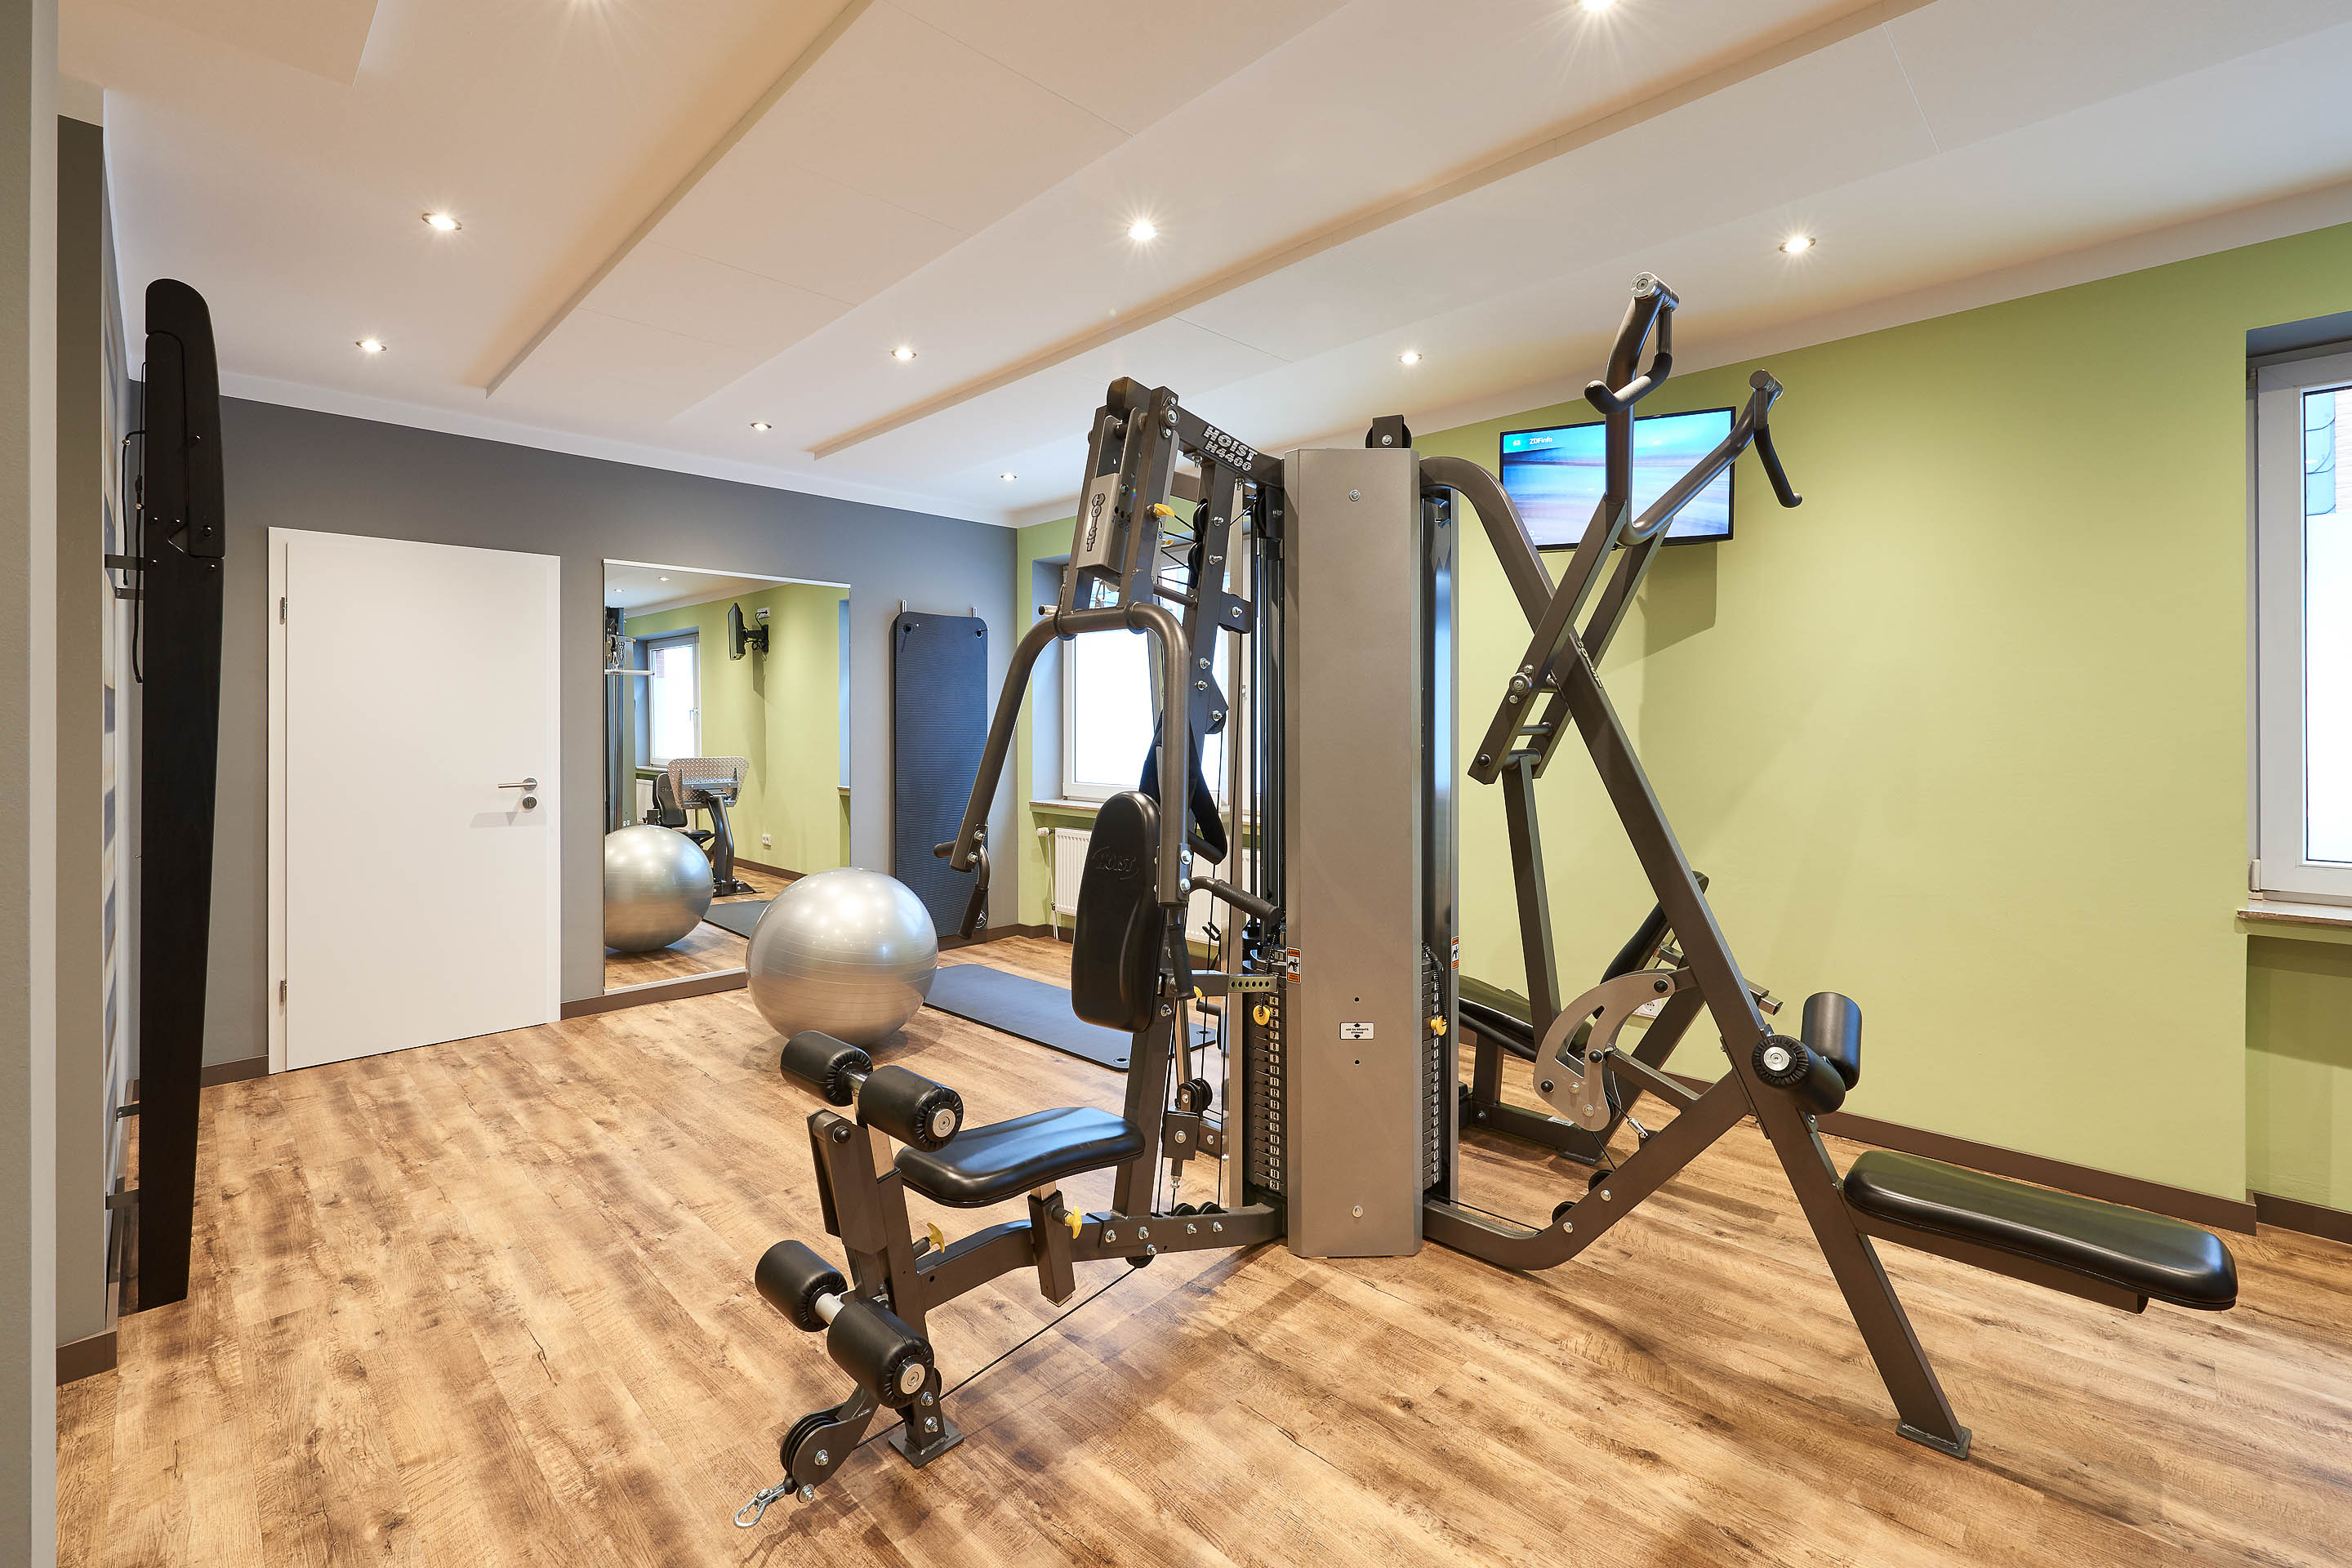 Fitnessraum mit Kraftgeräten, im Hintergrund Spiegel, Gymnastikball und Gymnastikmatten